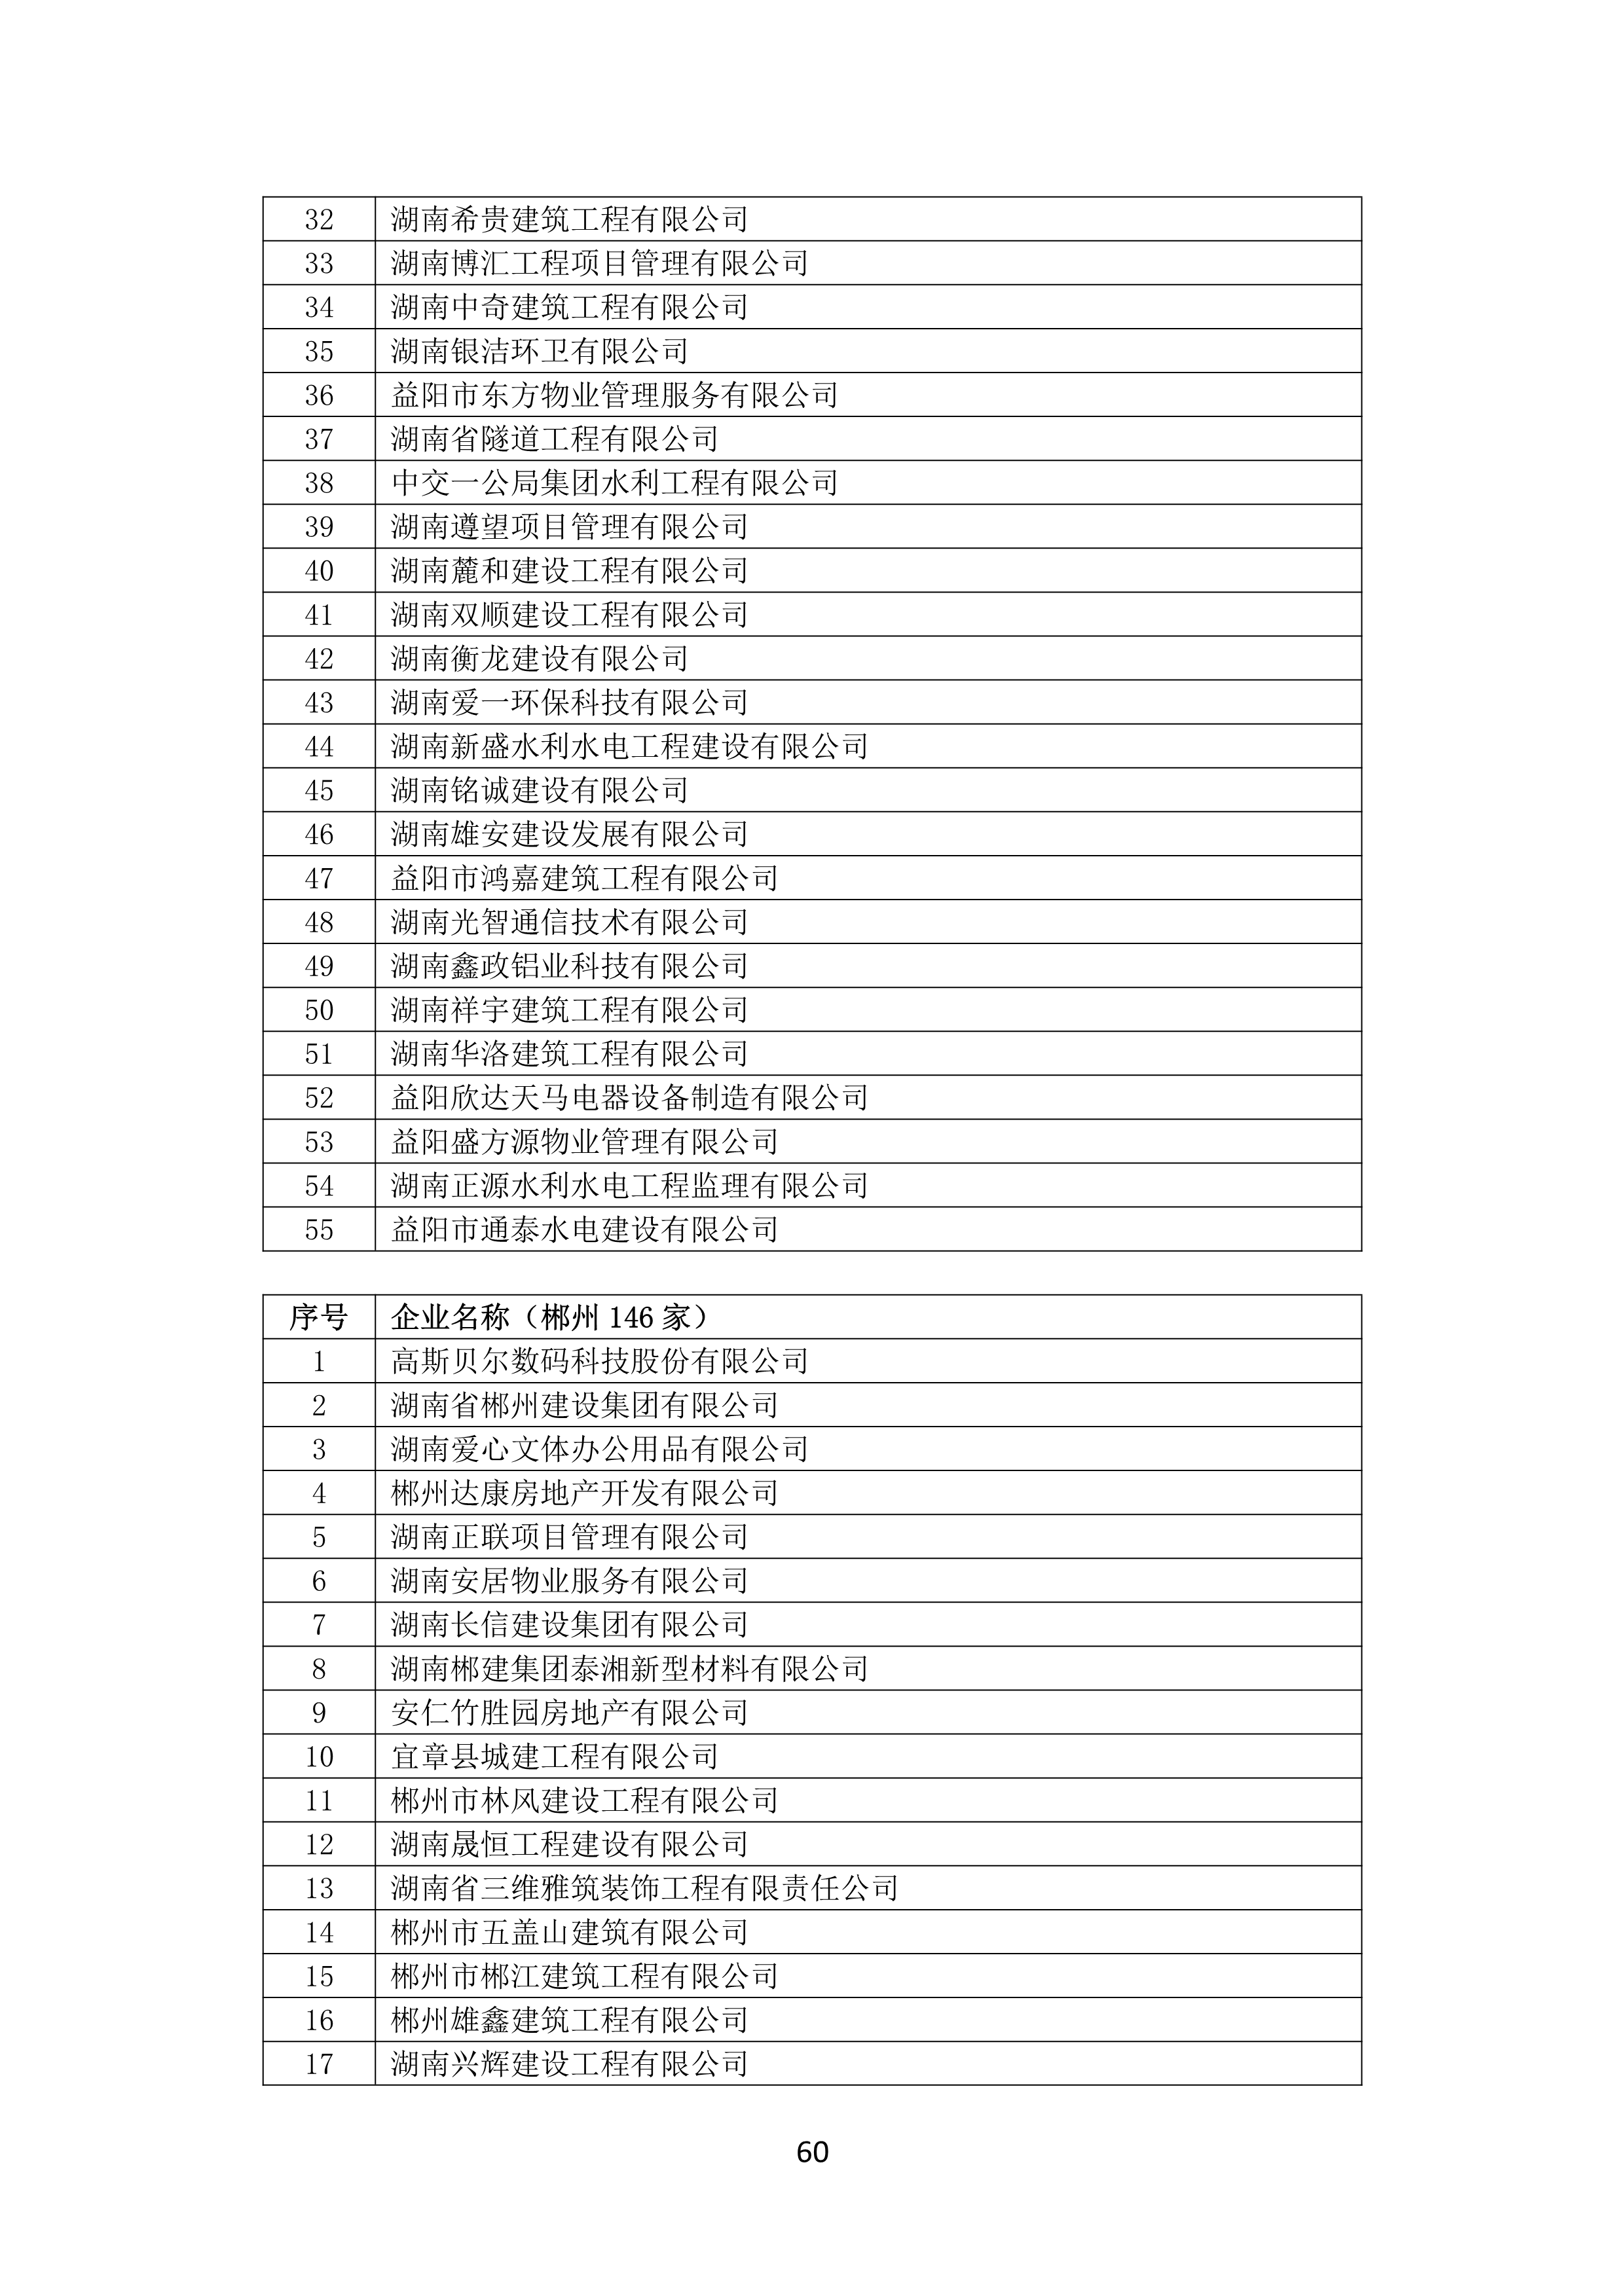 2021 年(nián)度湖南省守合同重信用企業名單_61.png